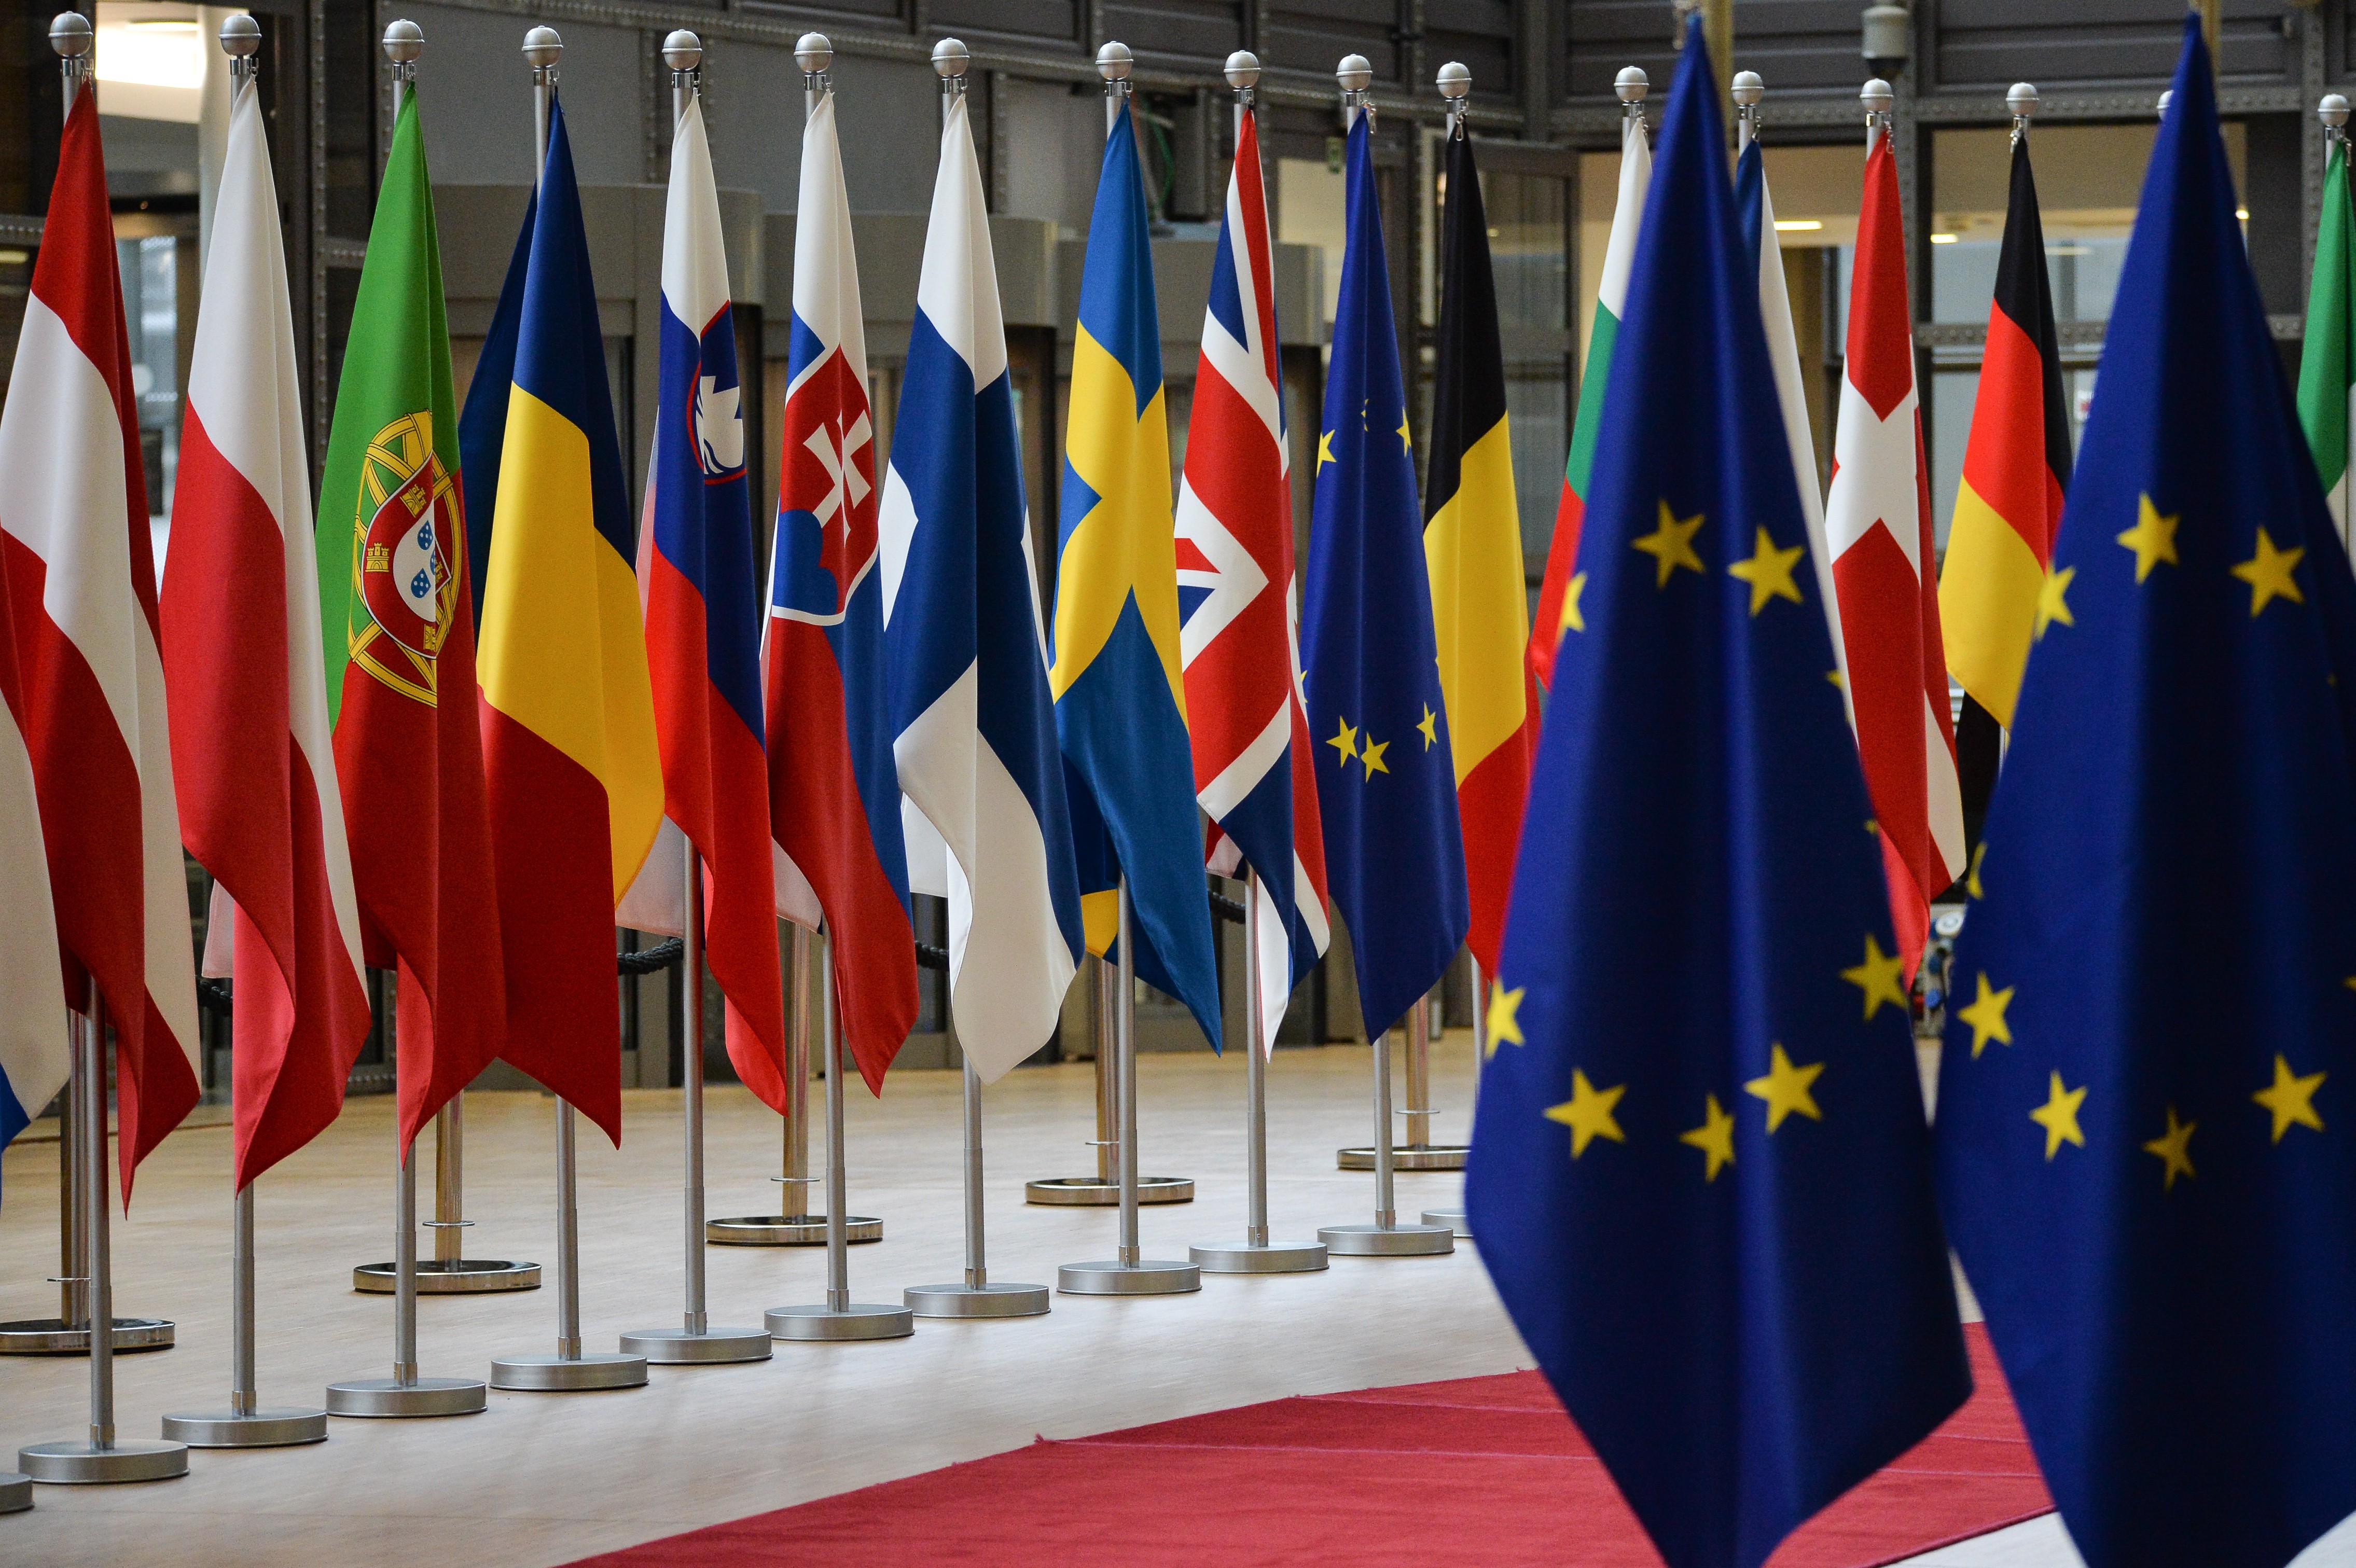 Международные союзы европы